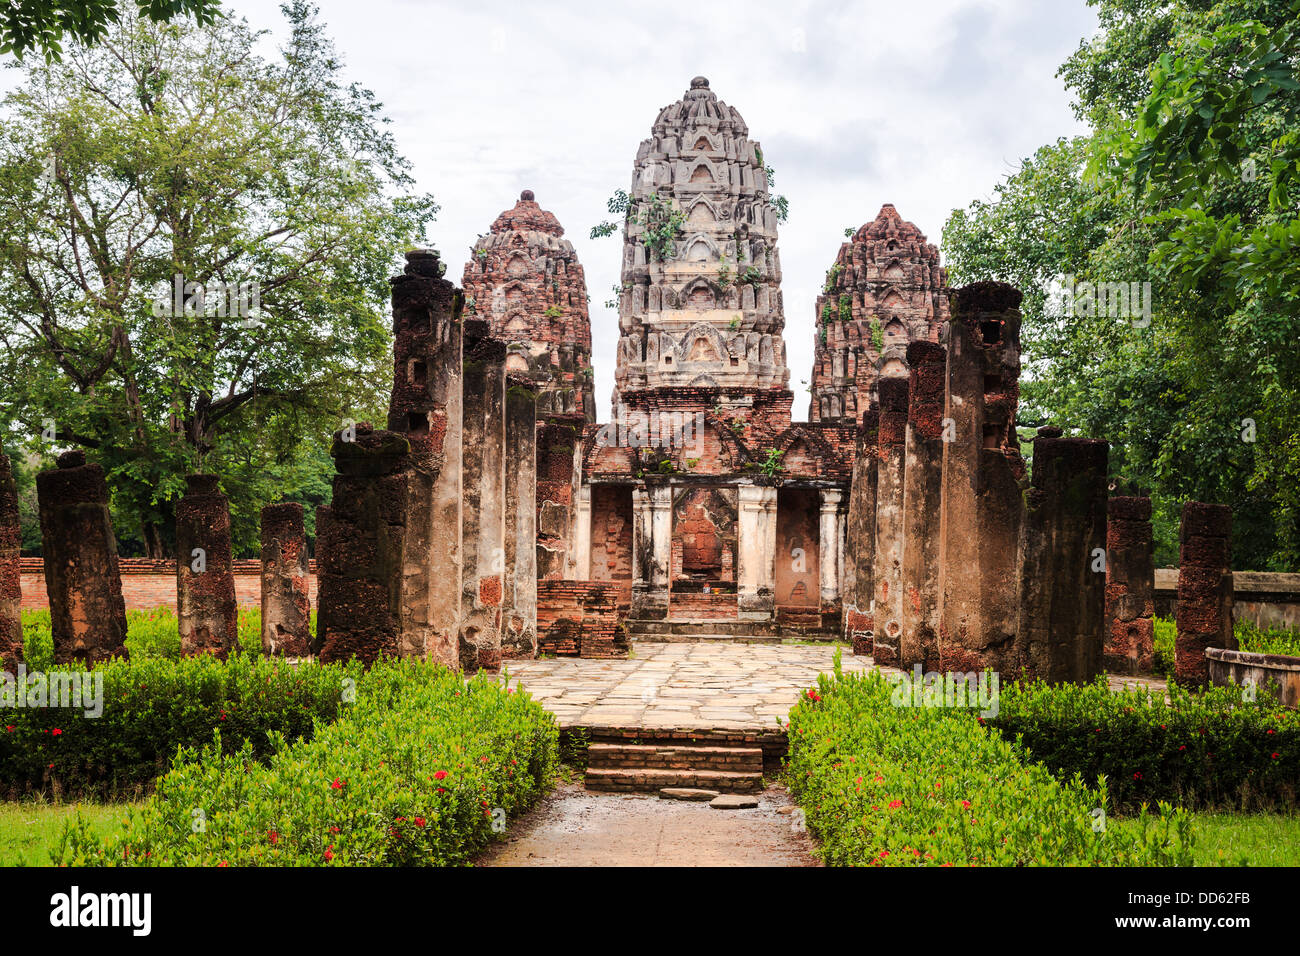 Wat Sri sawai en parc historique de Sukhothai, Thaïlande, province de Sukhothai Banque D'Images